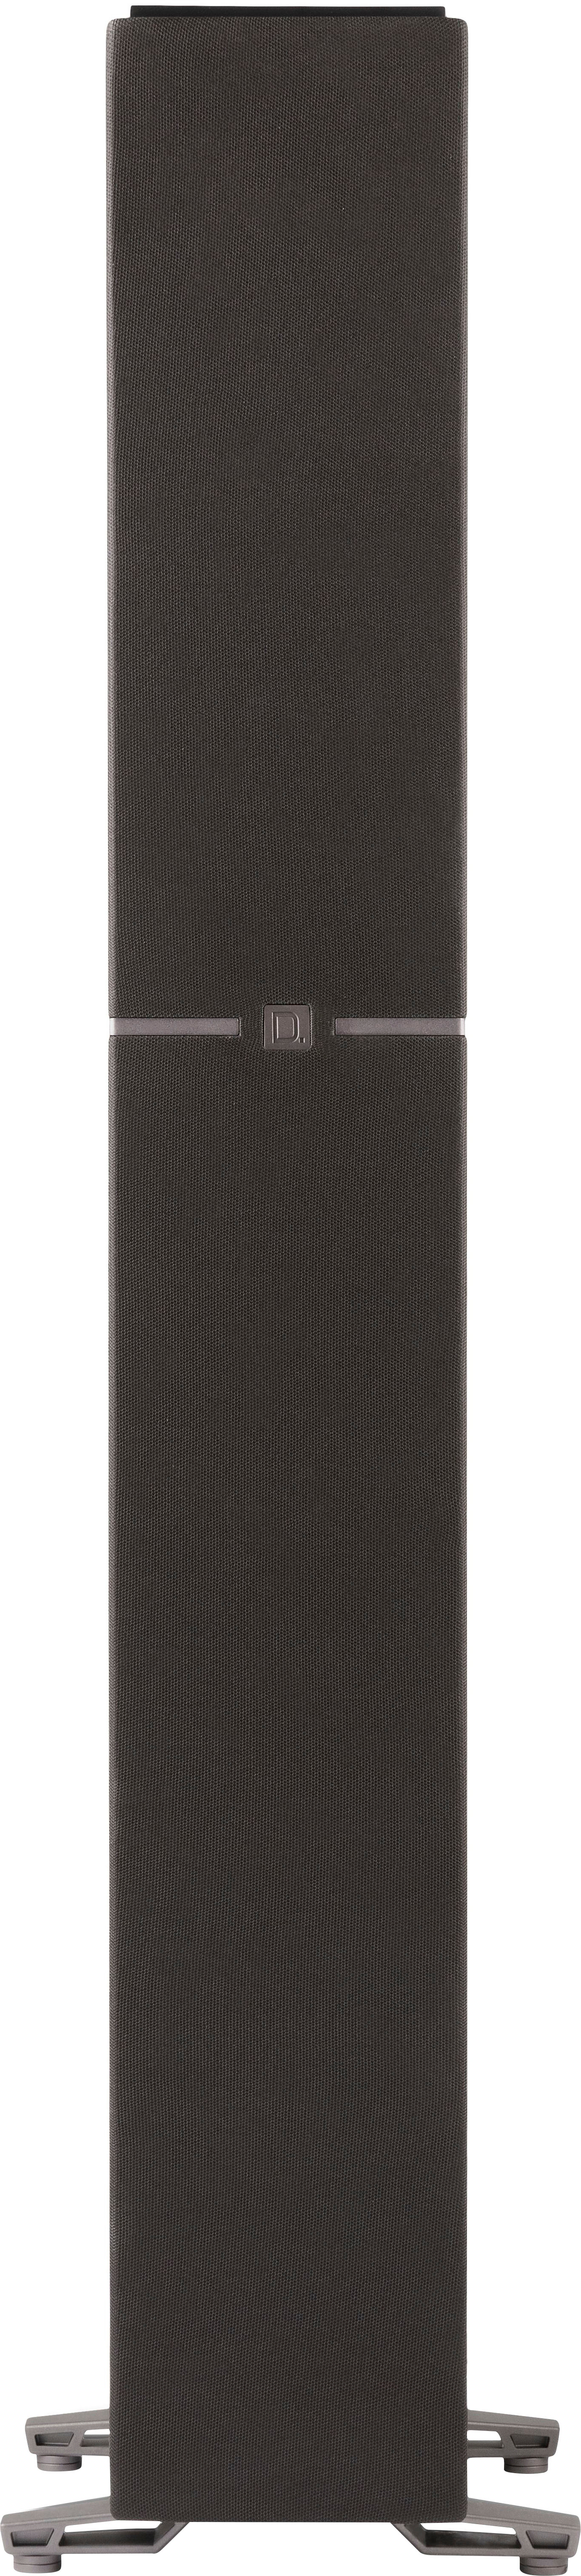 Angle View: Yamaha - Dual 6.5-Inch 180-Watt-Max 2-Way Floor-Standing HD Movie Tower Speaker - Piano Black